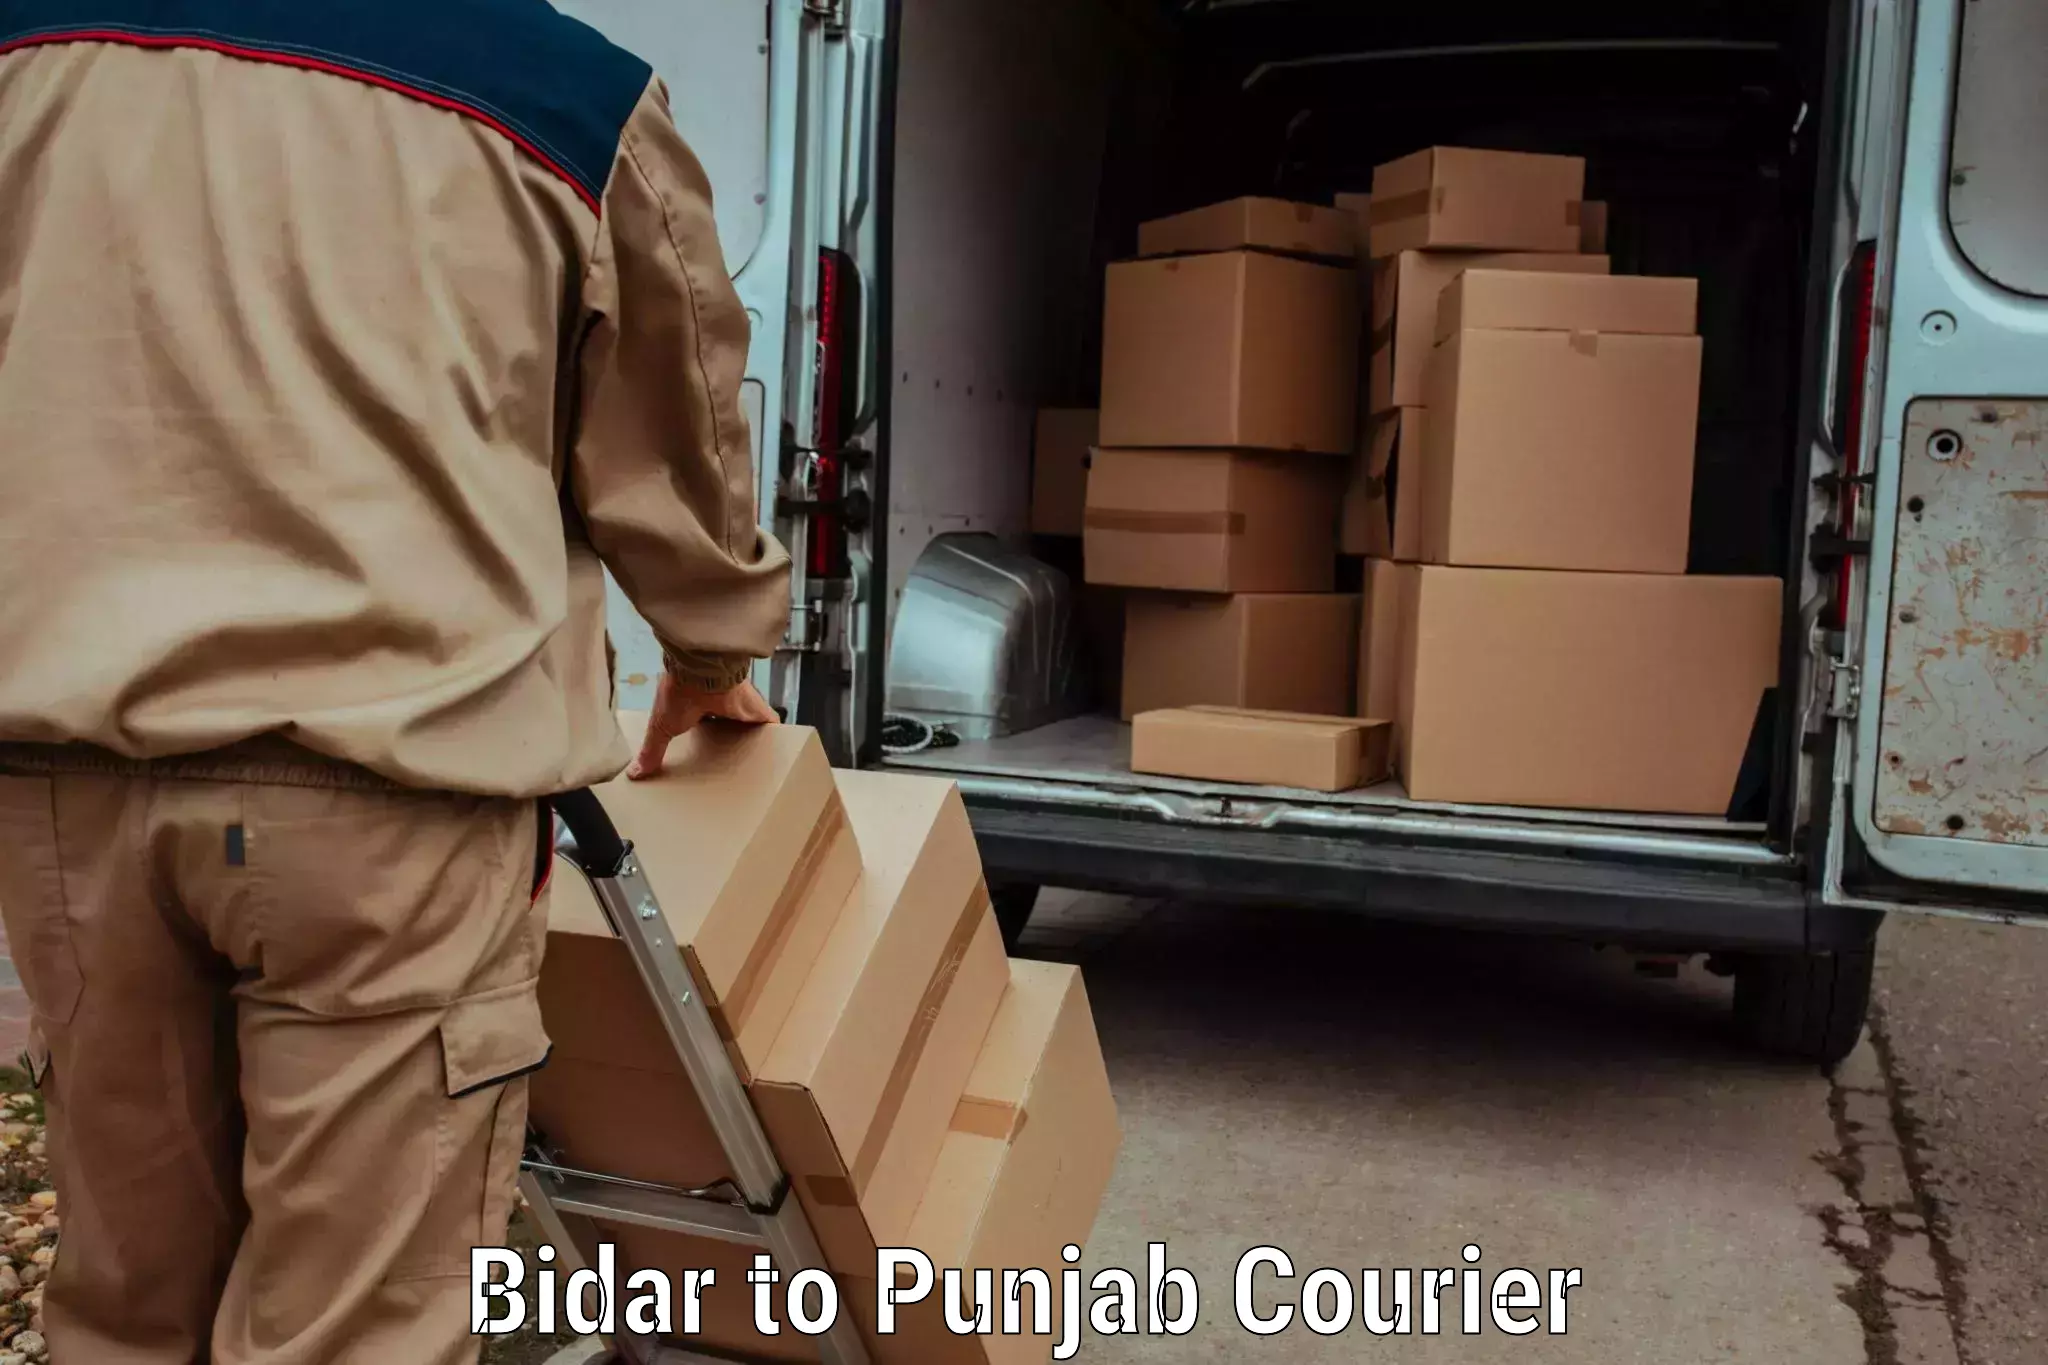 Same day luggage service Bidar to Punjab